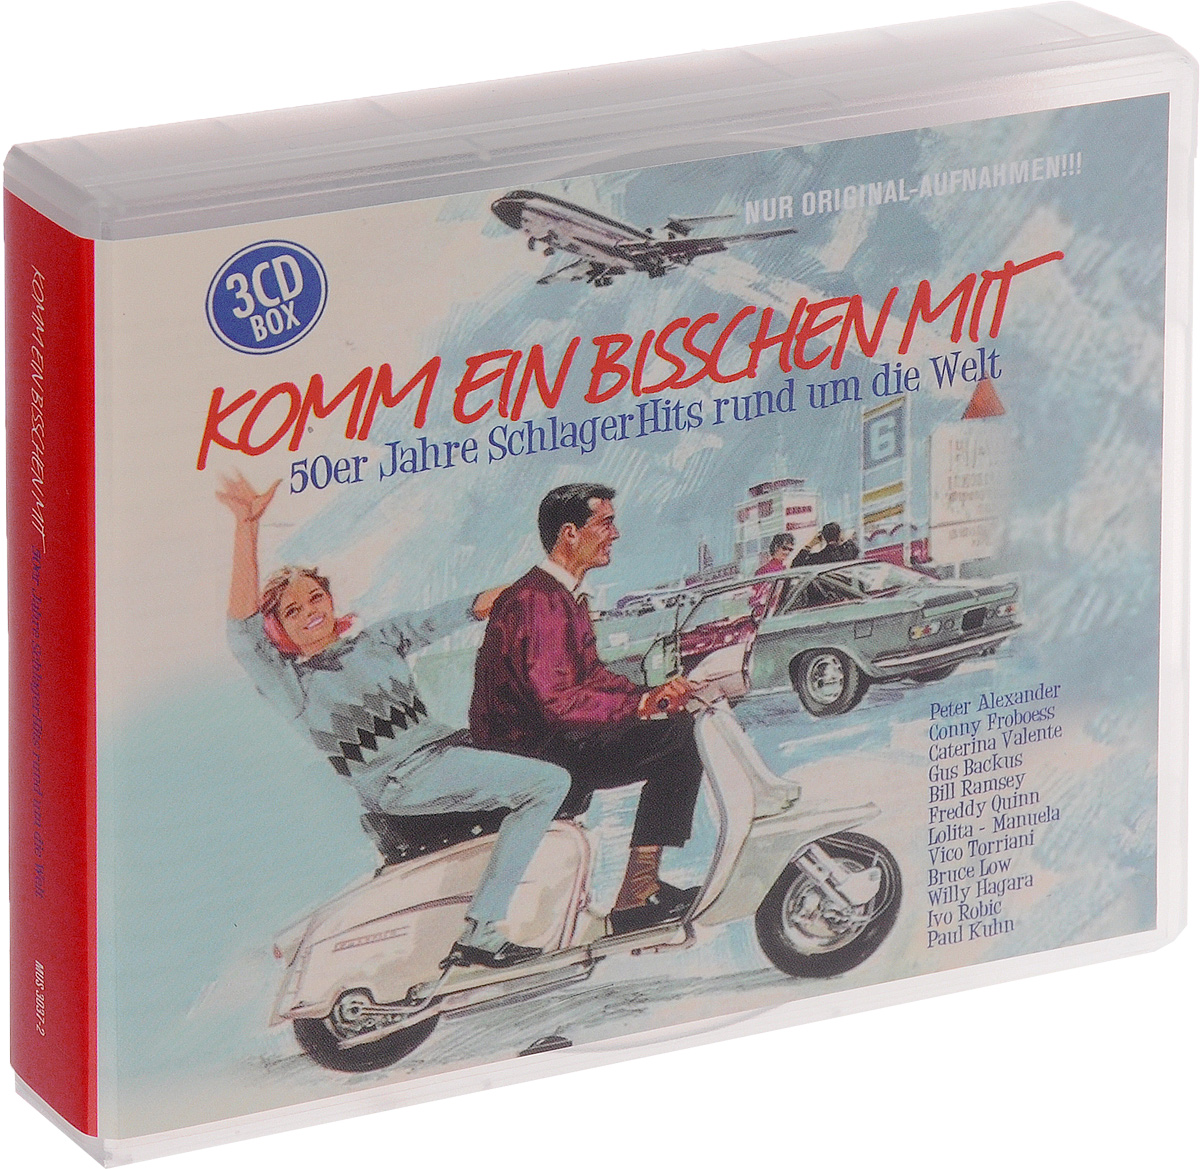 Komm Ein Bisschen Mit. 50er Jahre Schlager Hits Rund Um Die Welt (3 CD)